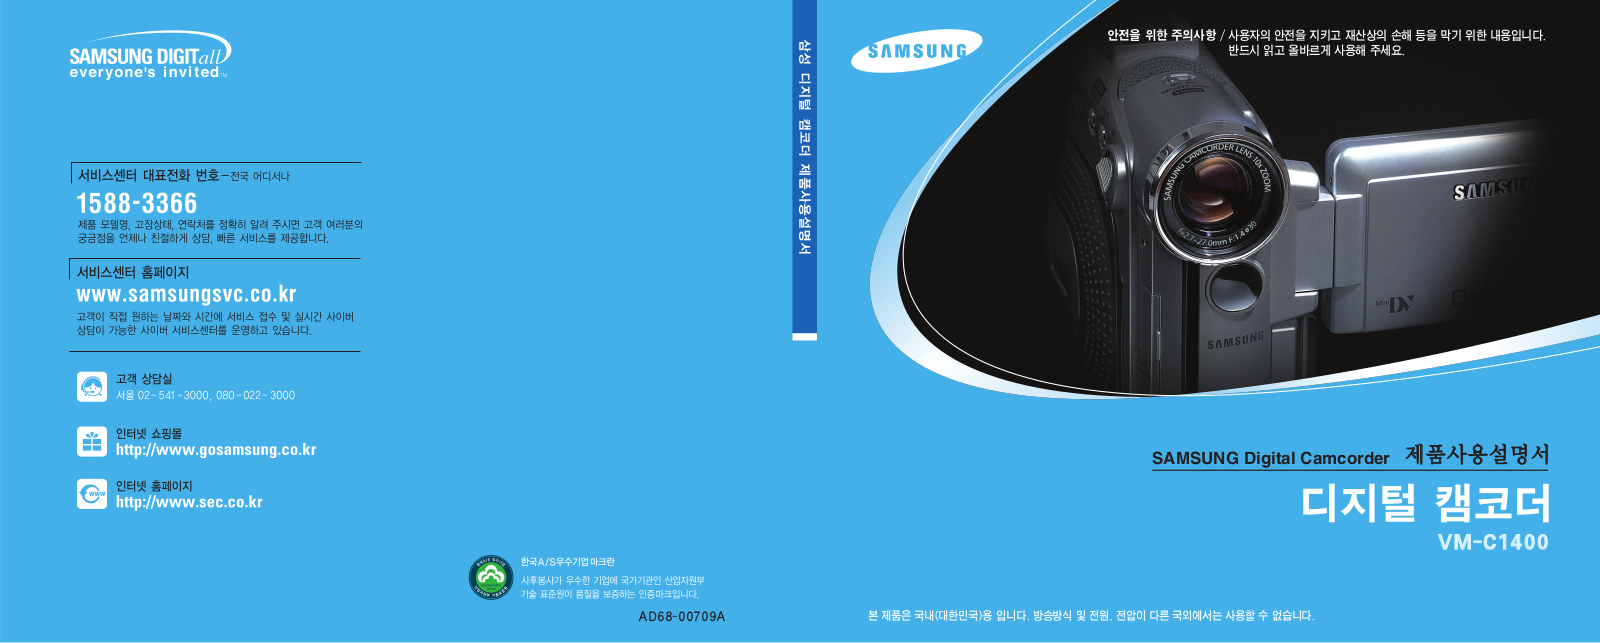 Samsung VM-C1400 User Manual